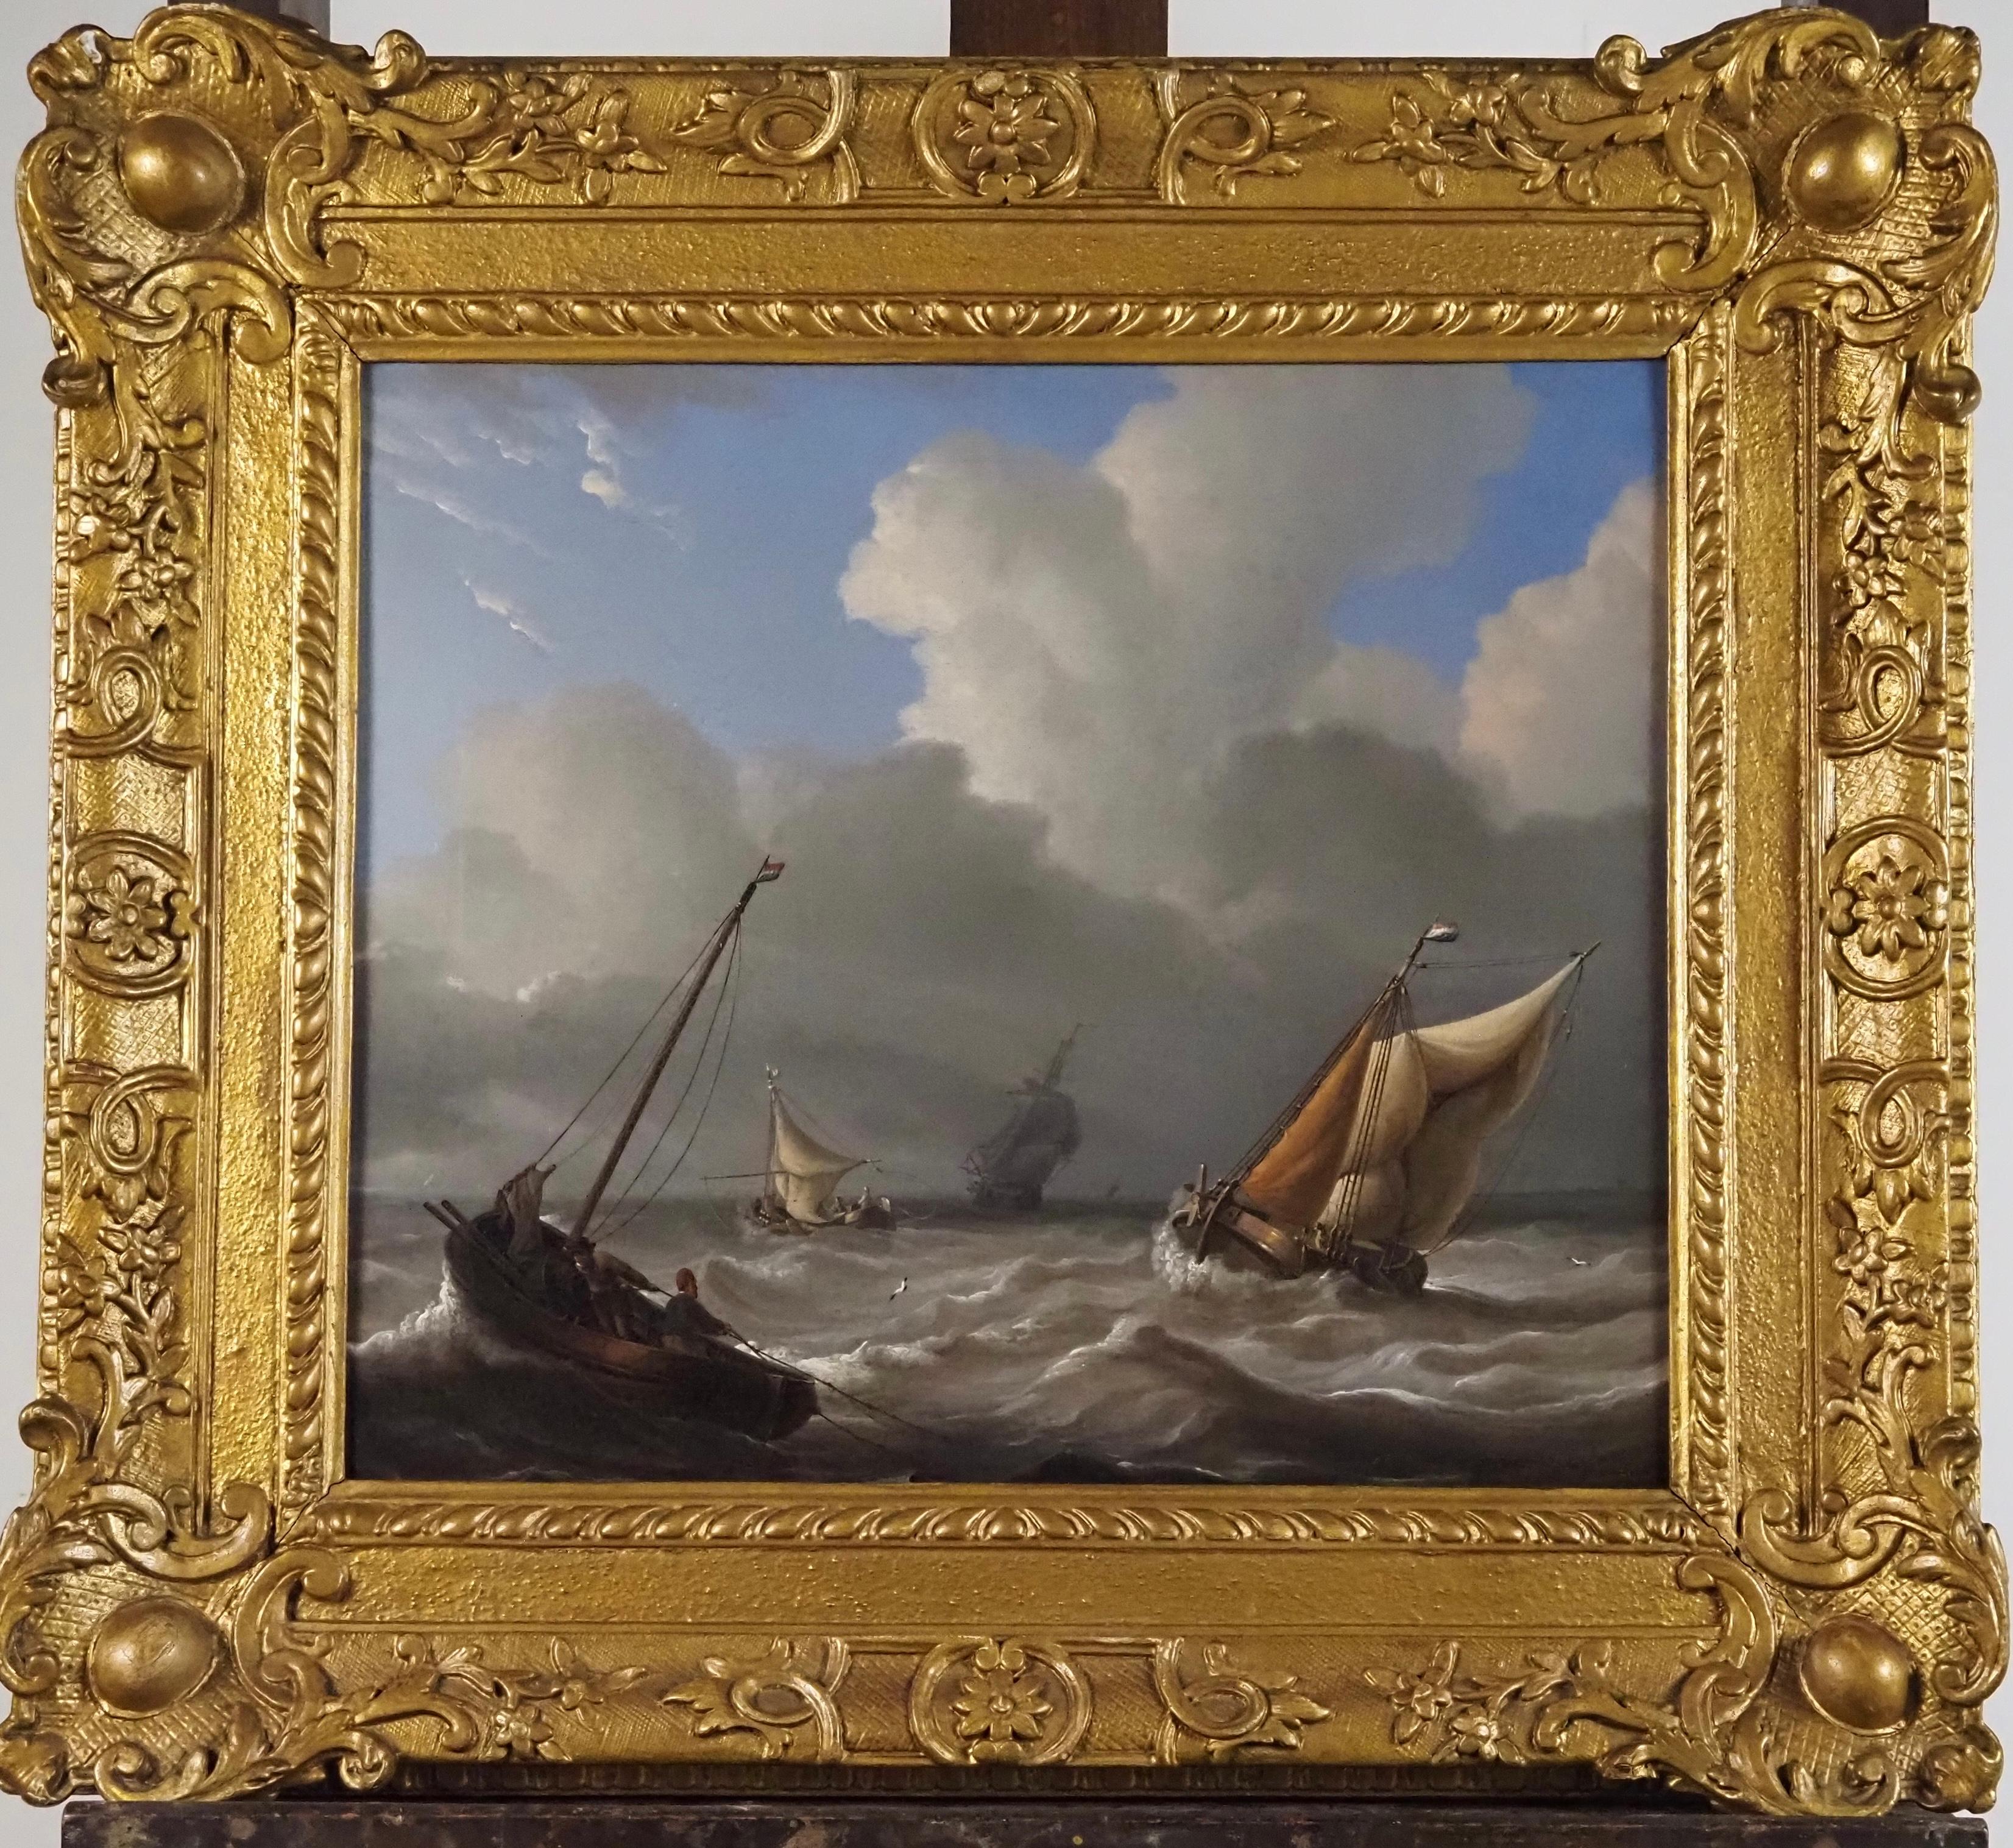 Landscape Painting Charles Martin Powell - La navigation néerlandaise dans une mer agitée